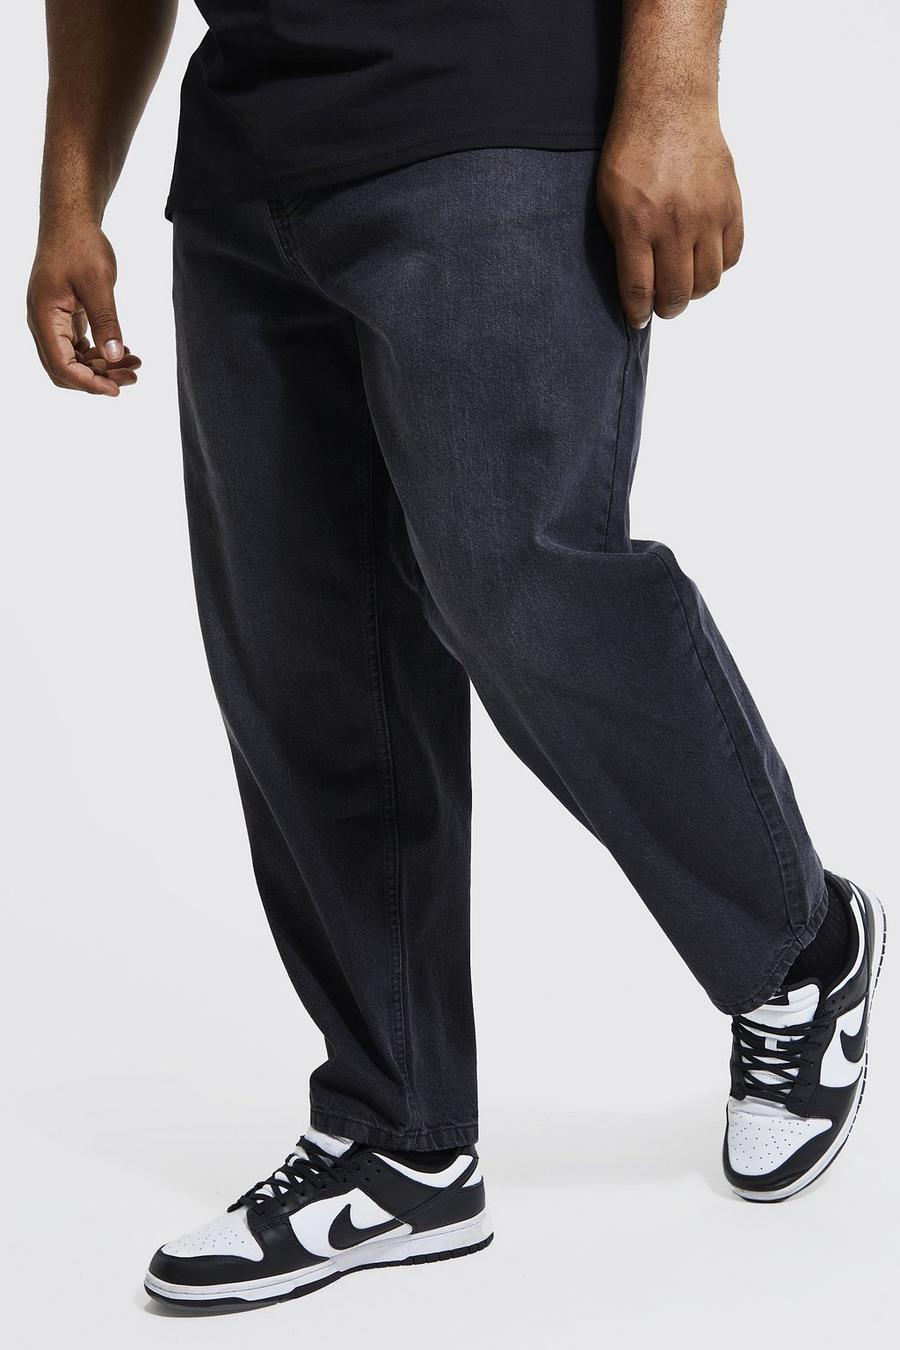 אפור ביניים grigio ג'ינס מבד קשיח בגזרת קרסול צרה, מידות גדולות